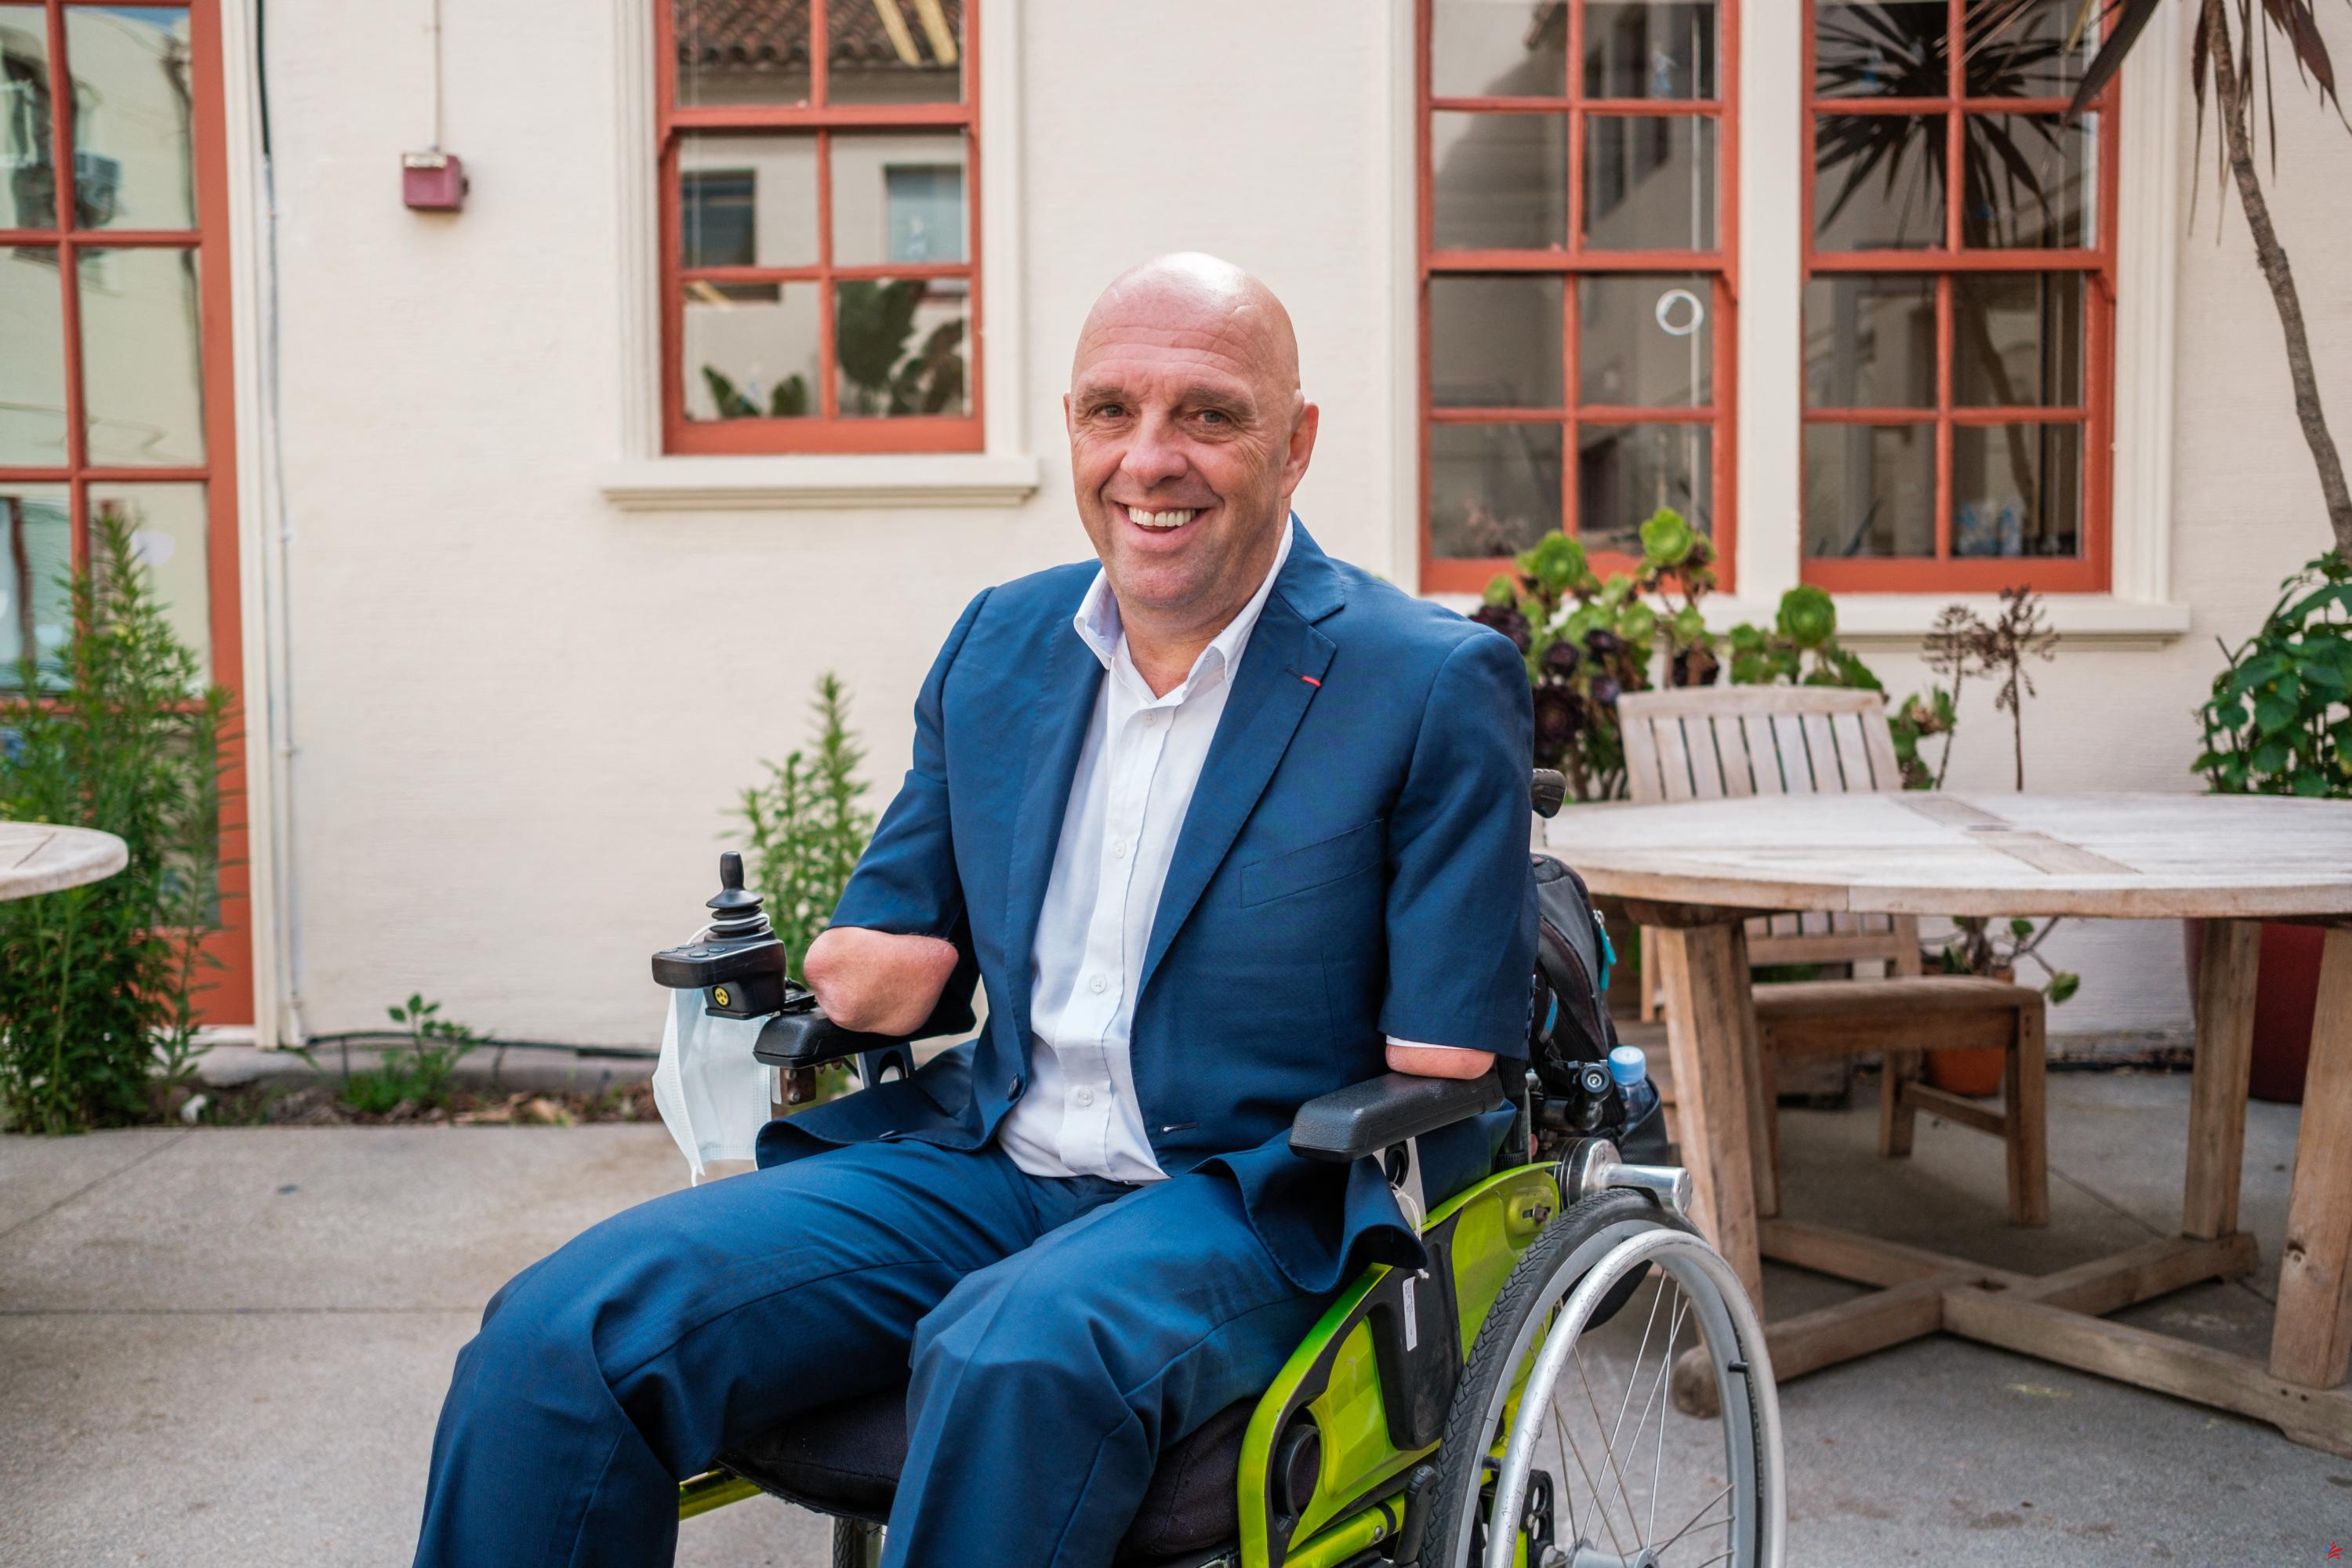 Philippe Croizon lanza una aplicación para ayudar a las personas con discapacidad a encontrar una plaza de aparcamiento